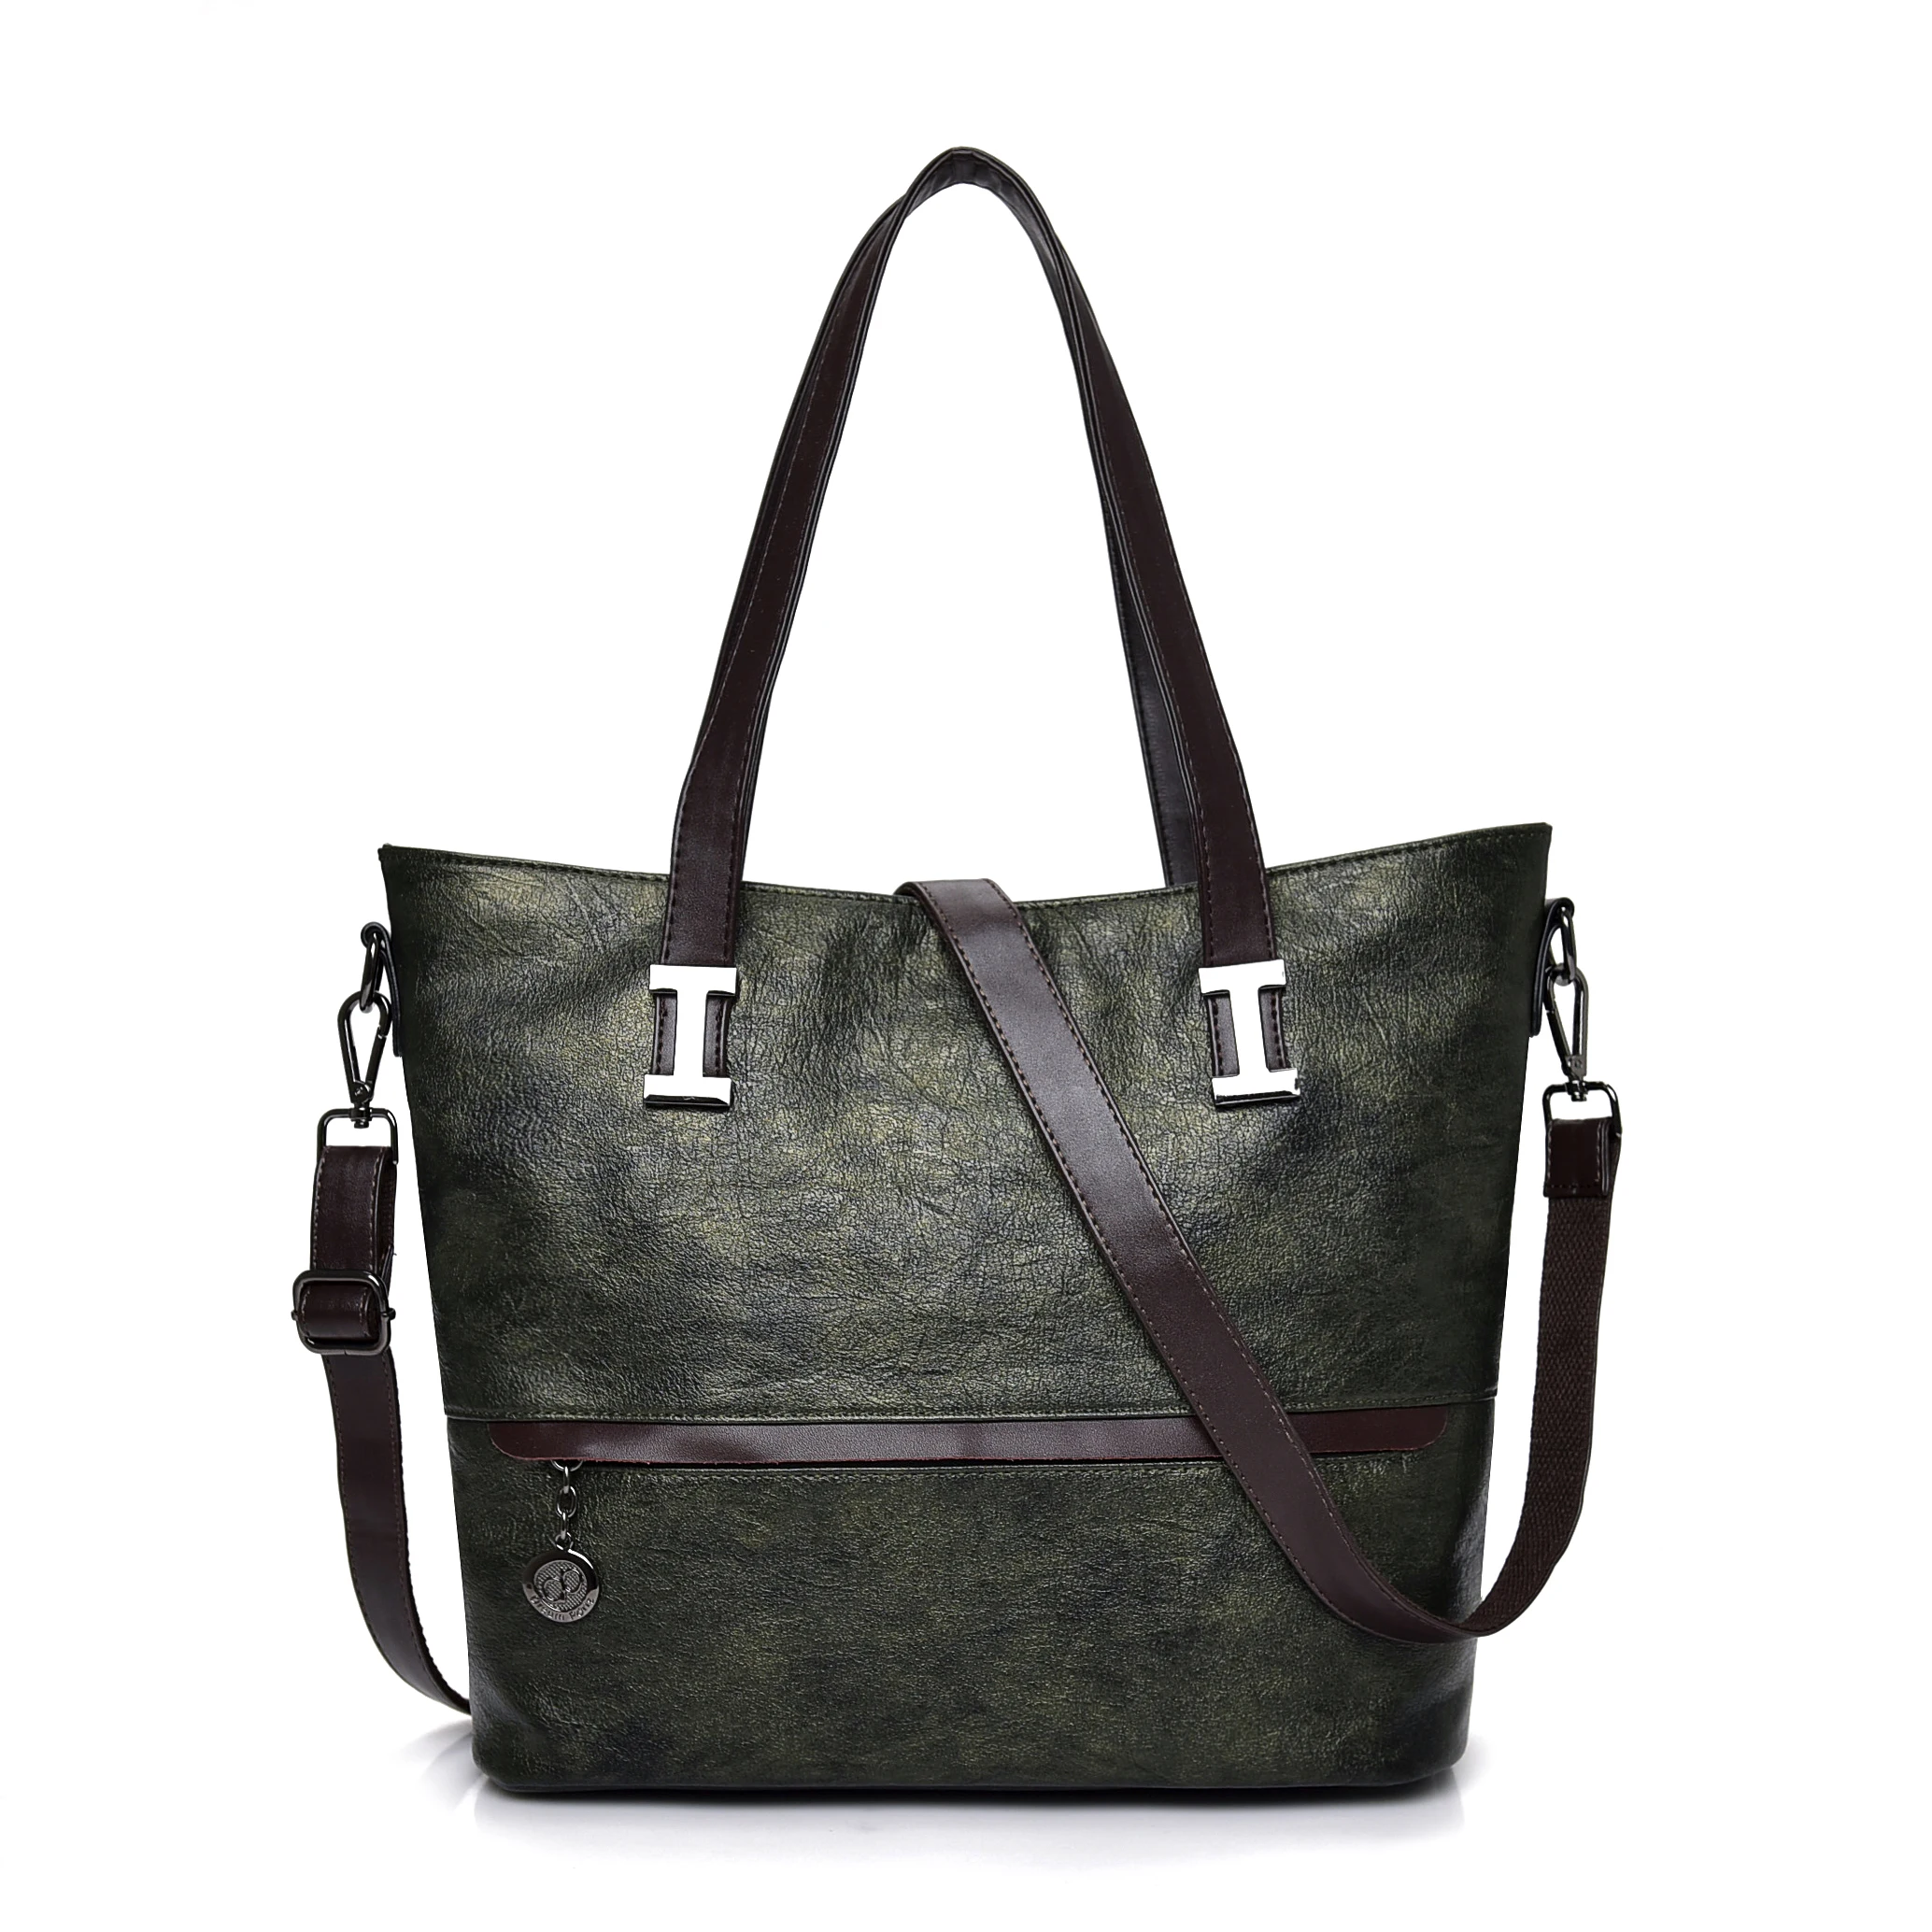 Большие сумки на плечо для женщин Sac основной Femme кожаные роскошные сумки женские сумки дизайнерские женские сумки известного бренда - Цвет: Green